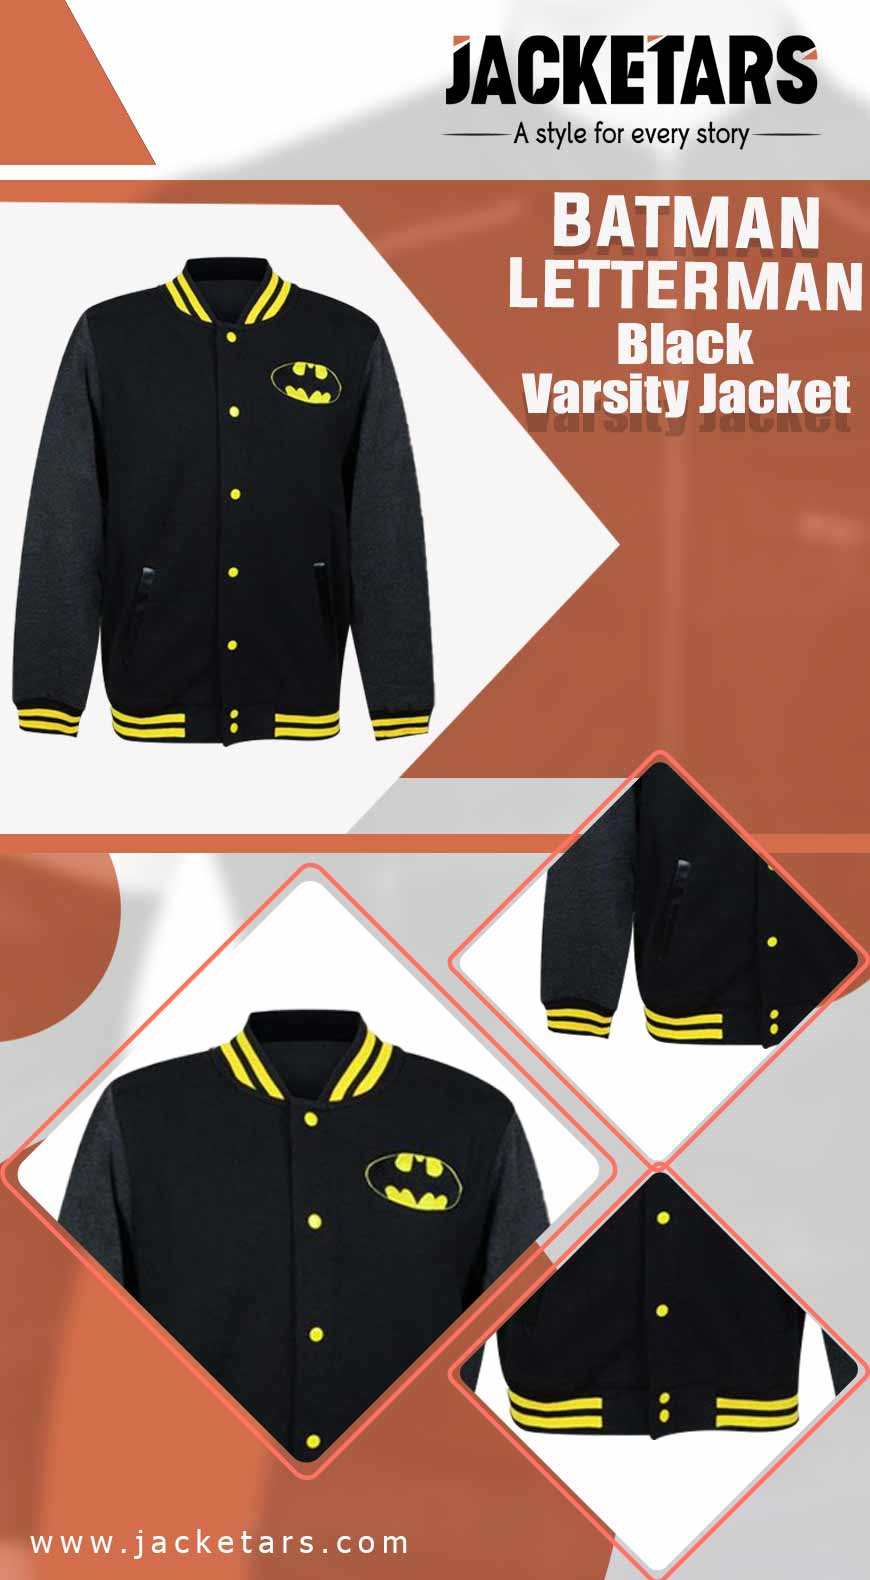 Batman Lettermen Black Varsity Jacket INFO